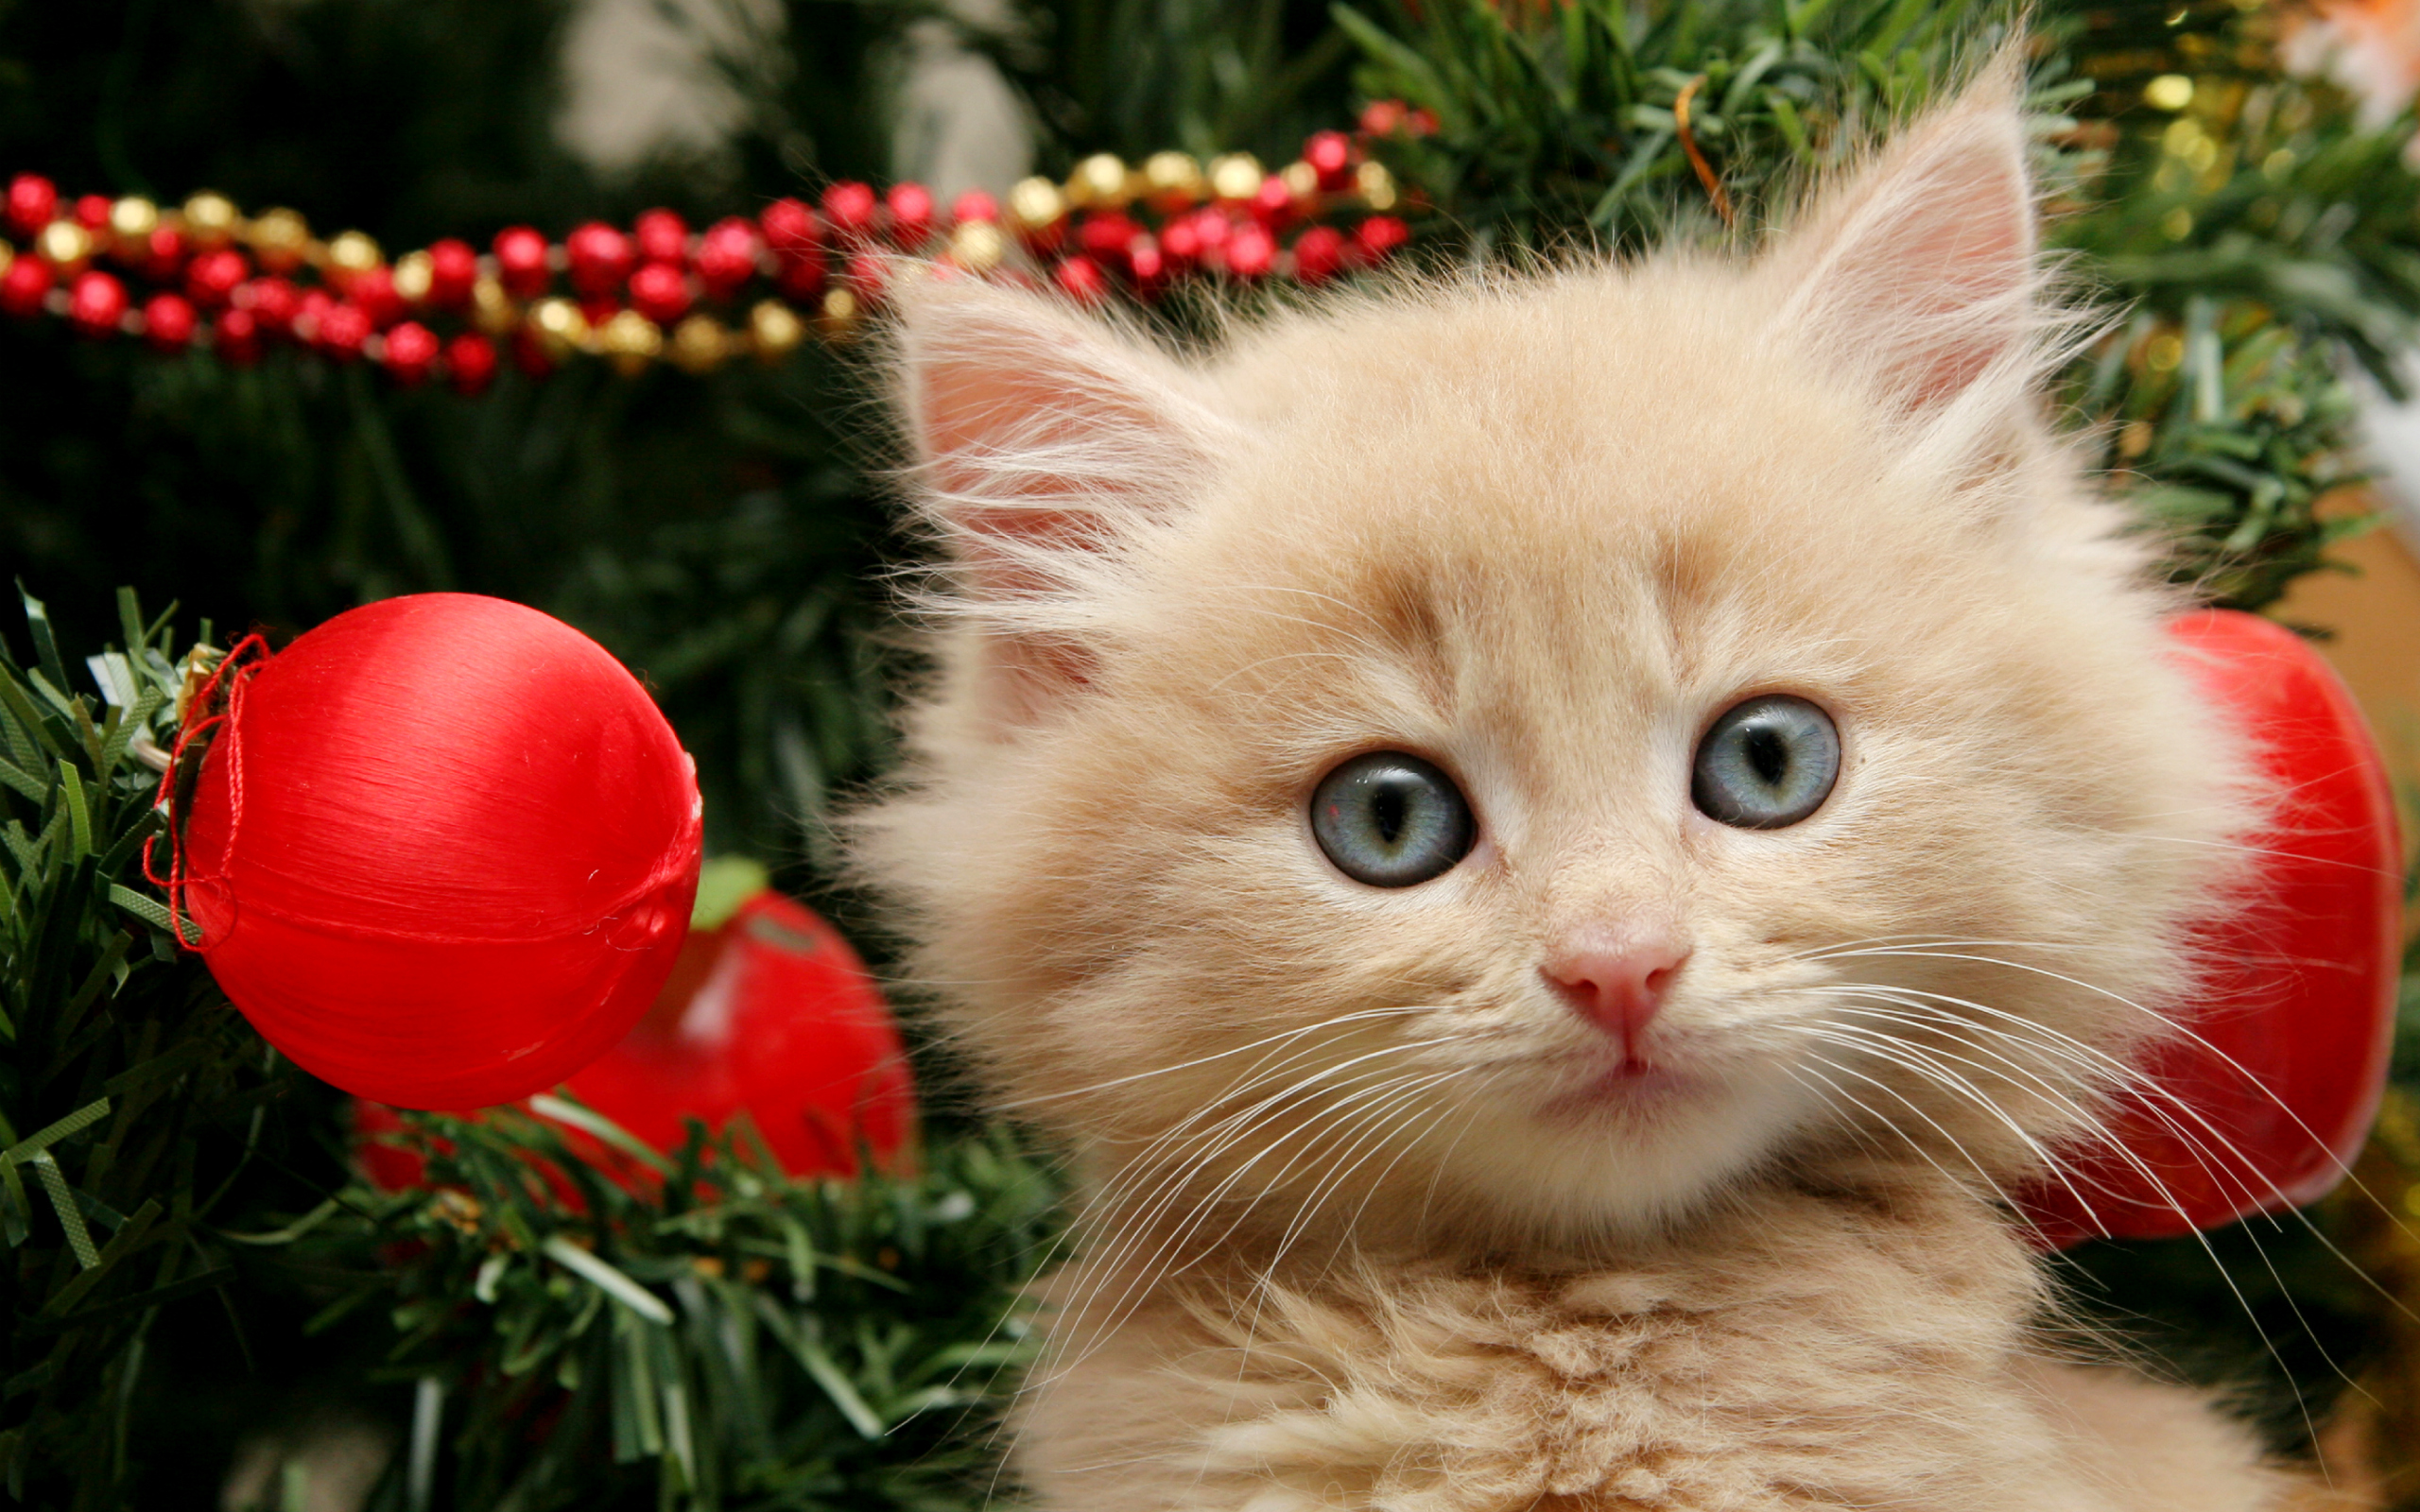 Bộ Hình Nền Chú Mèo Dưới Công Thông Giáng Sinh Đẹp